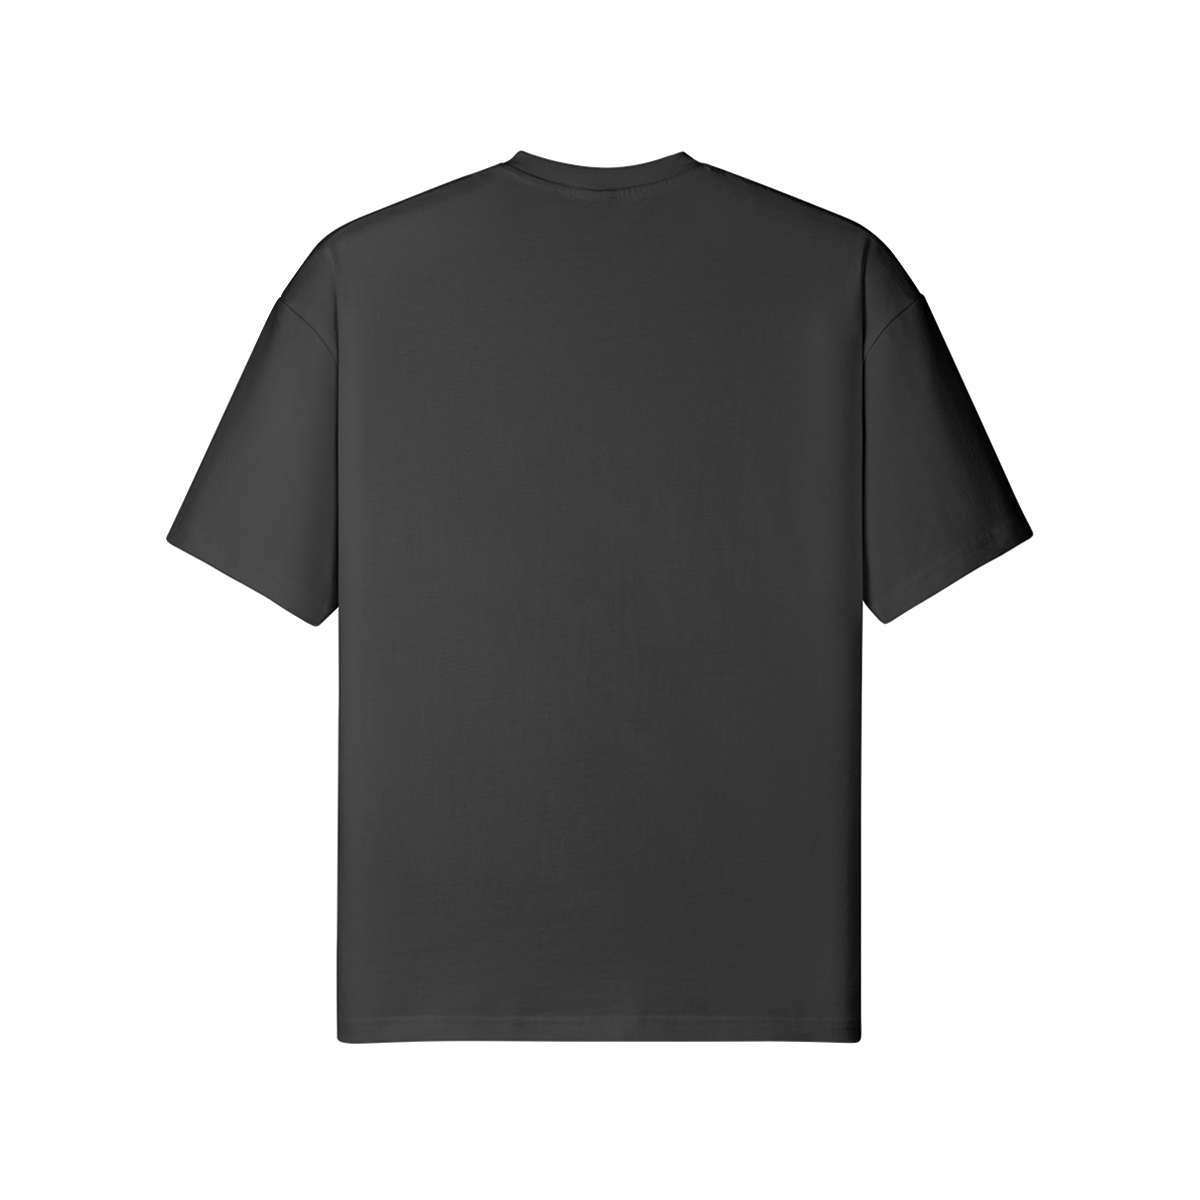 LION TRIP - Unisex Loose T-shirt